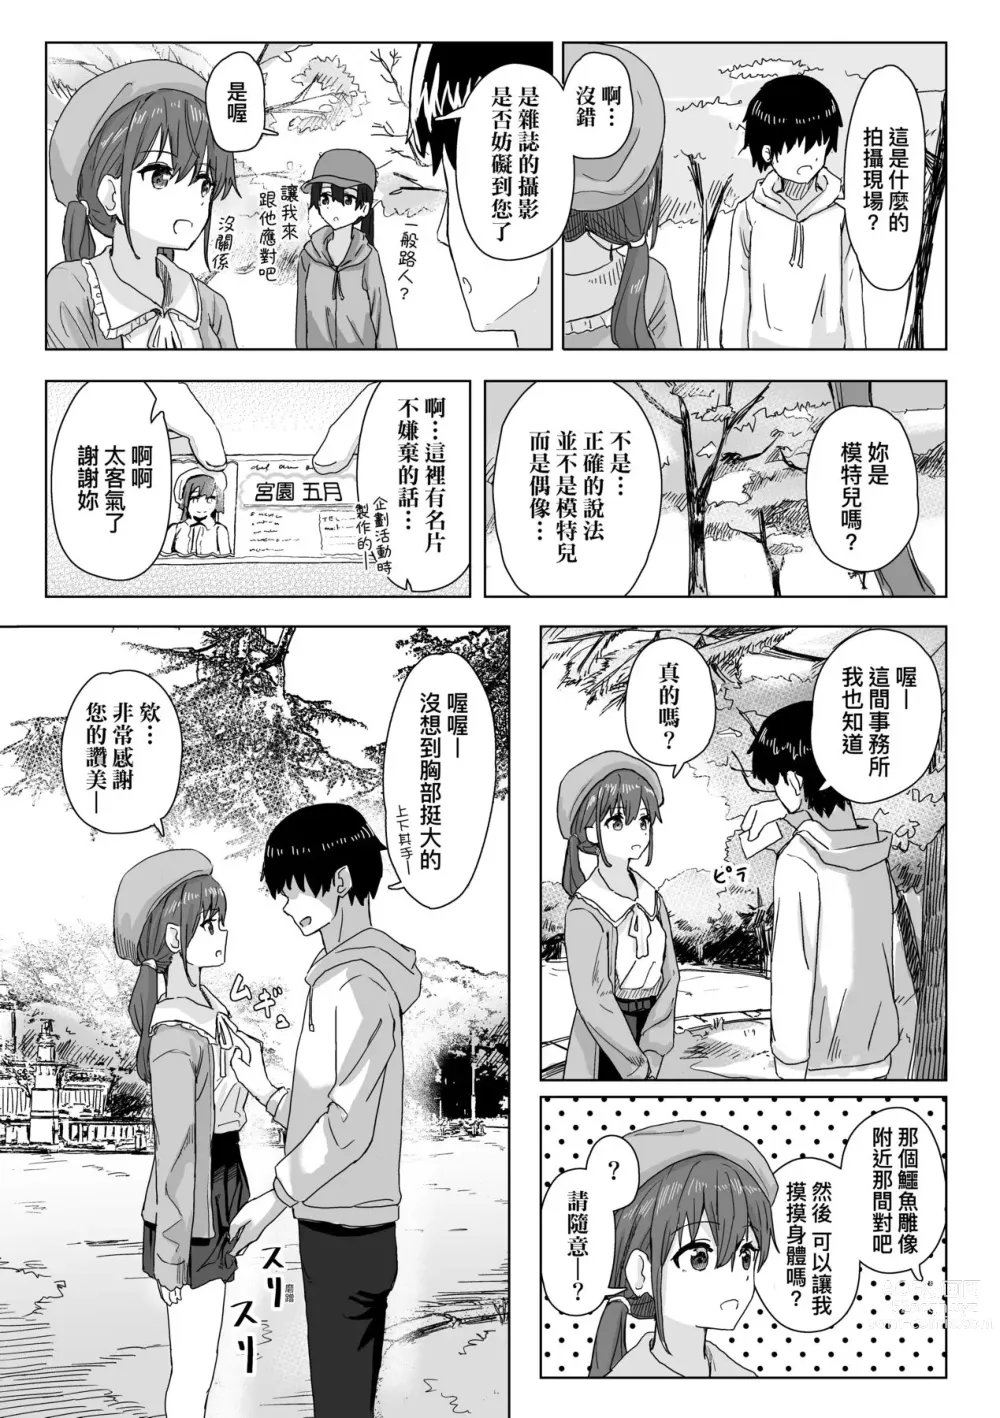 Page 8 of manga 常識改變活動紀錄